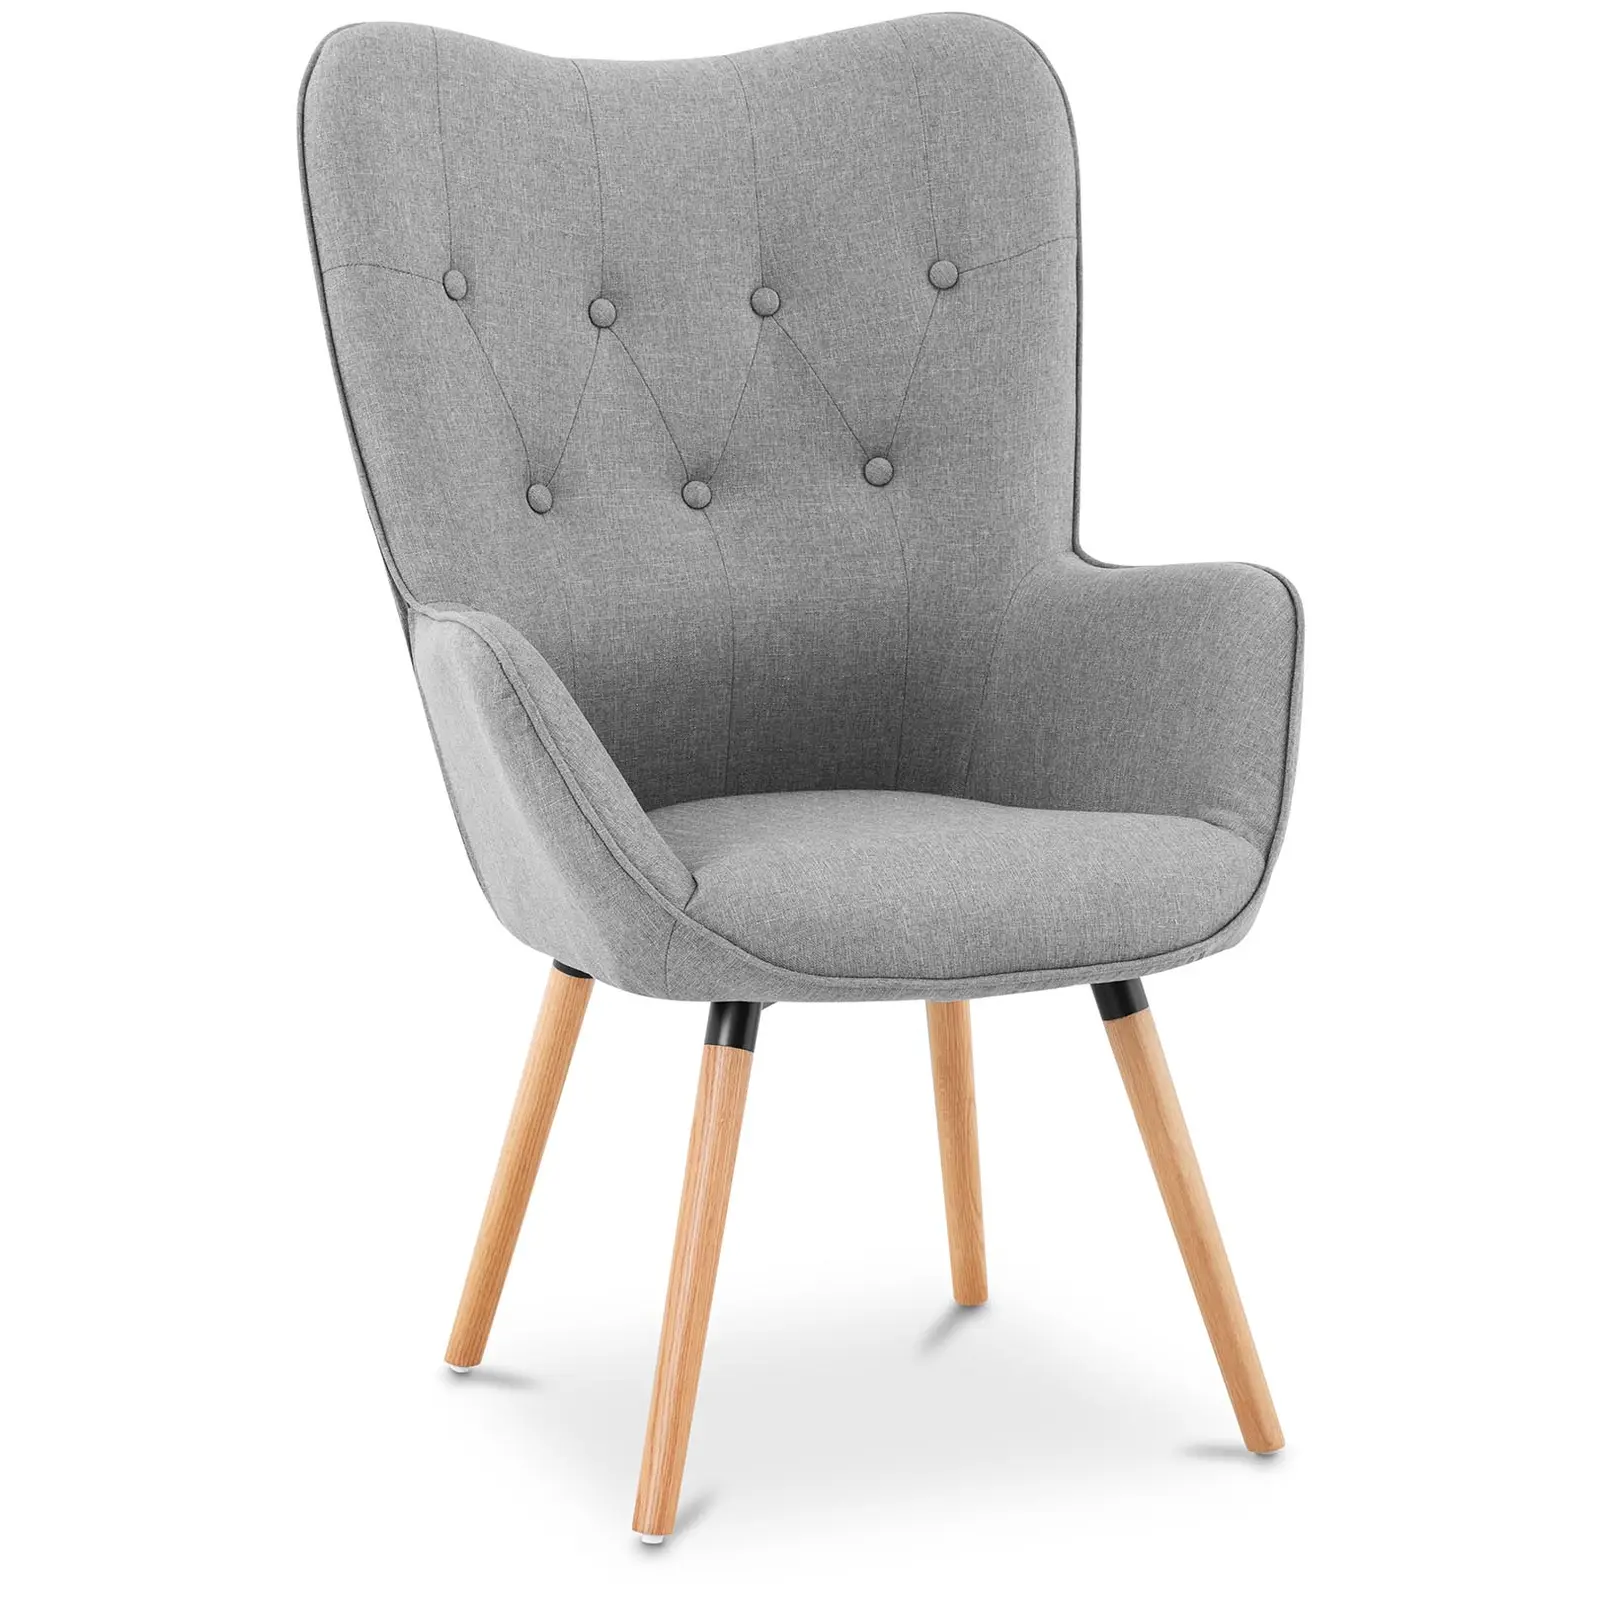 B-zboží Čalouněná židle - do 160 kg - sedací plocha 43 x 49 cm - šedá